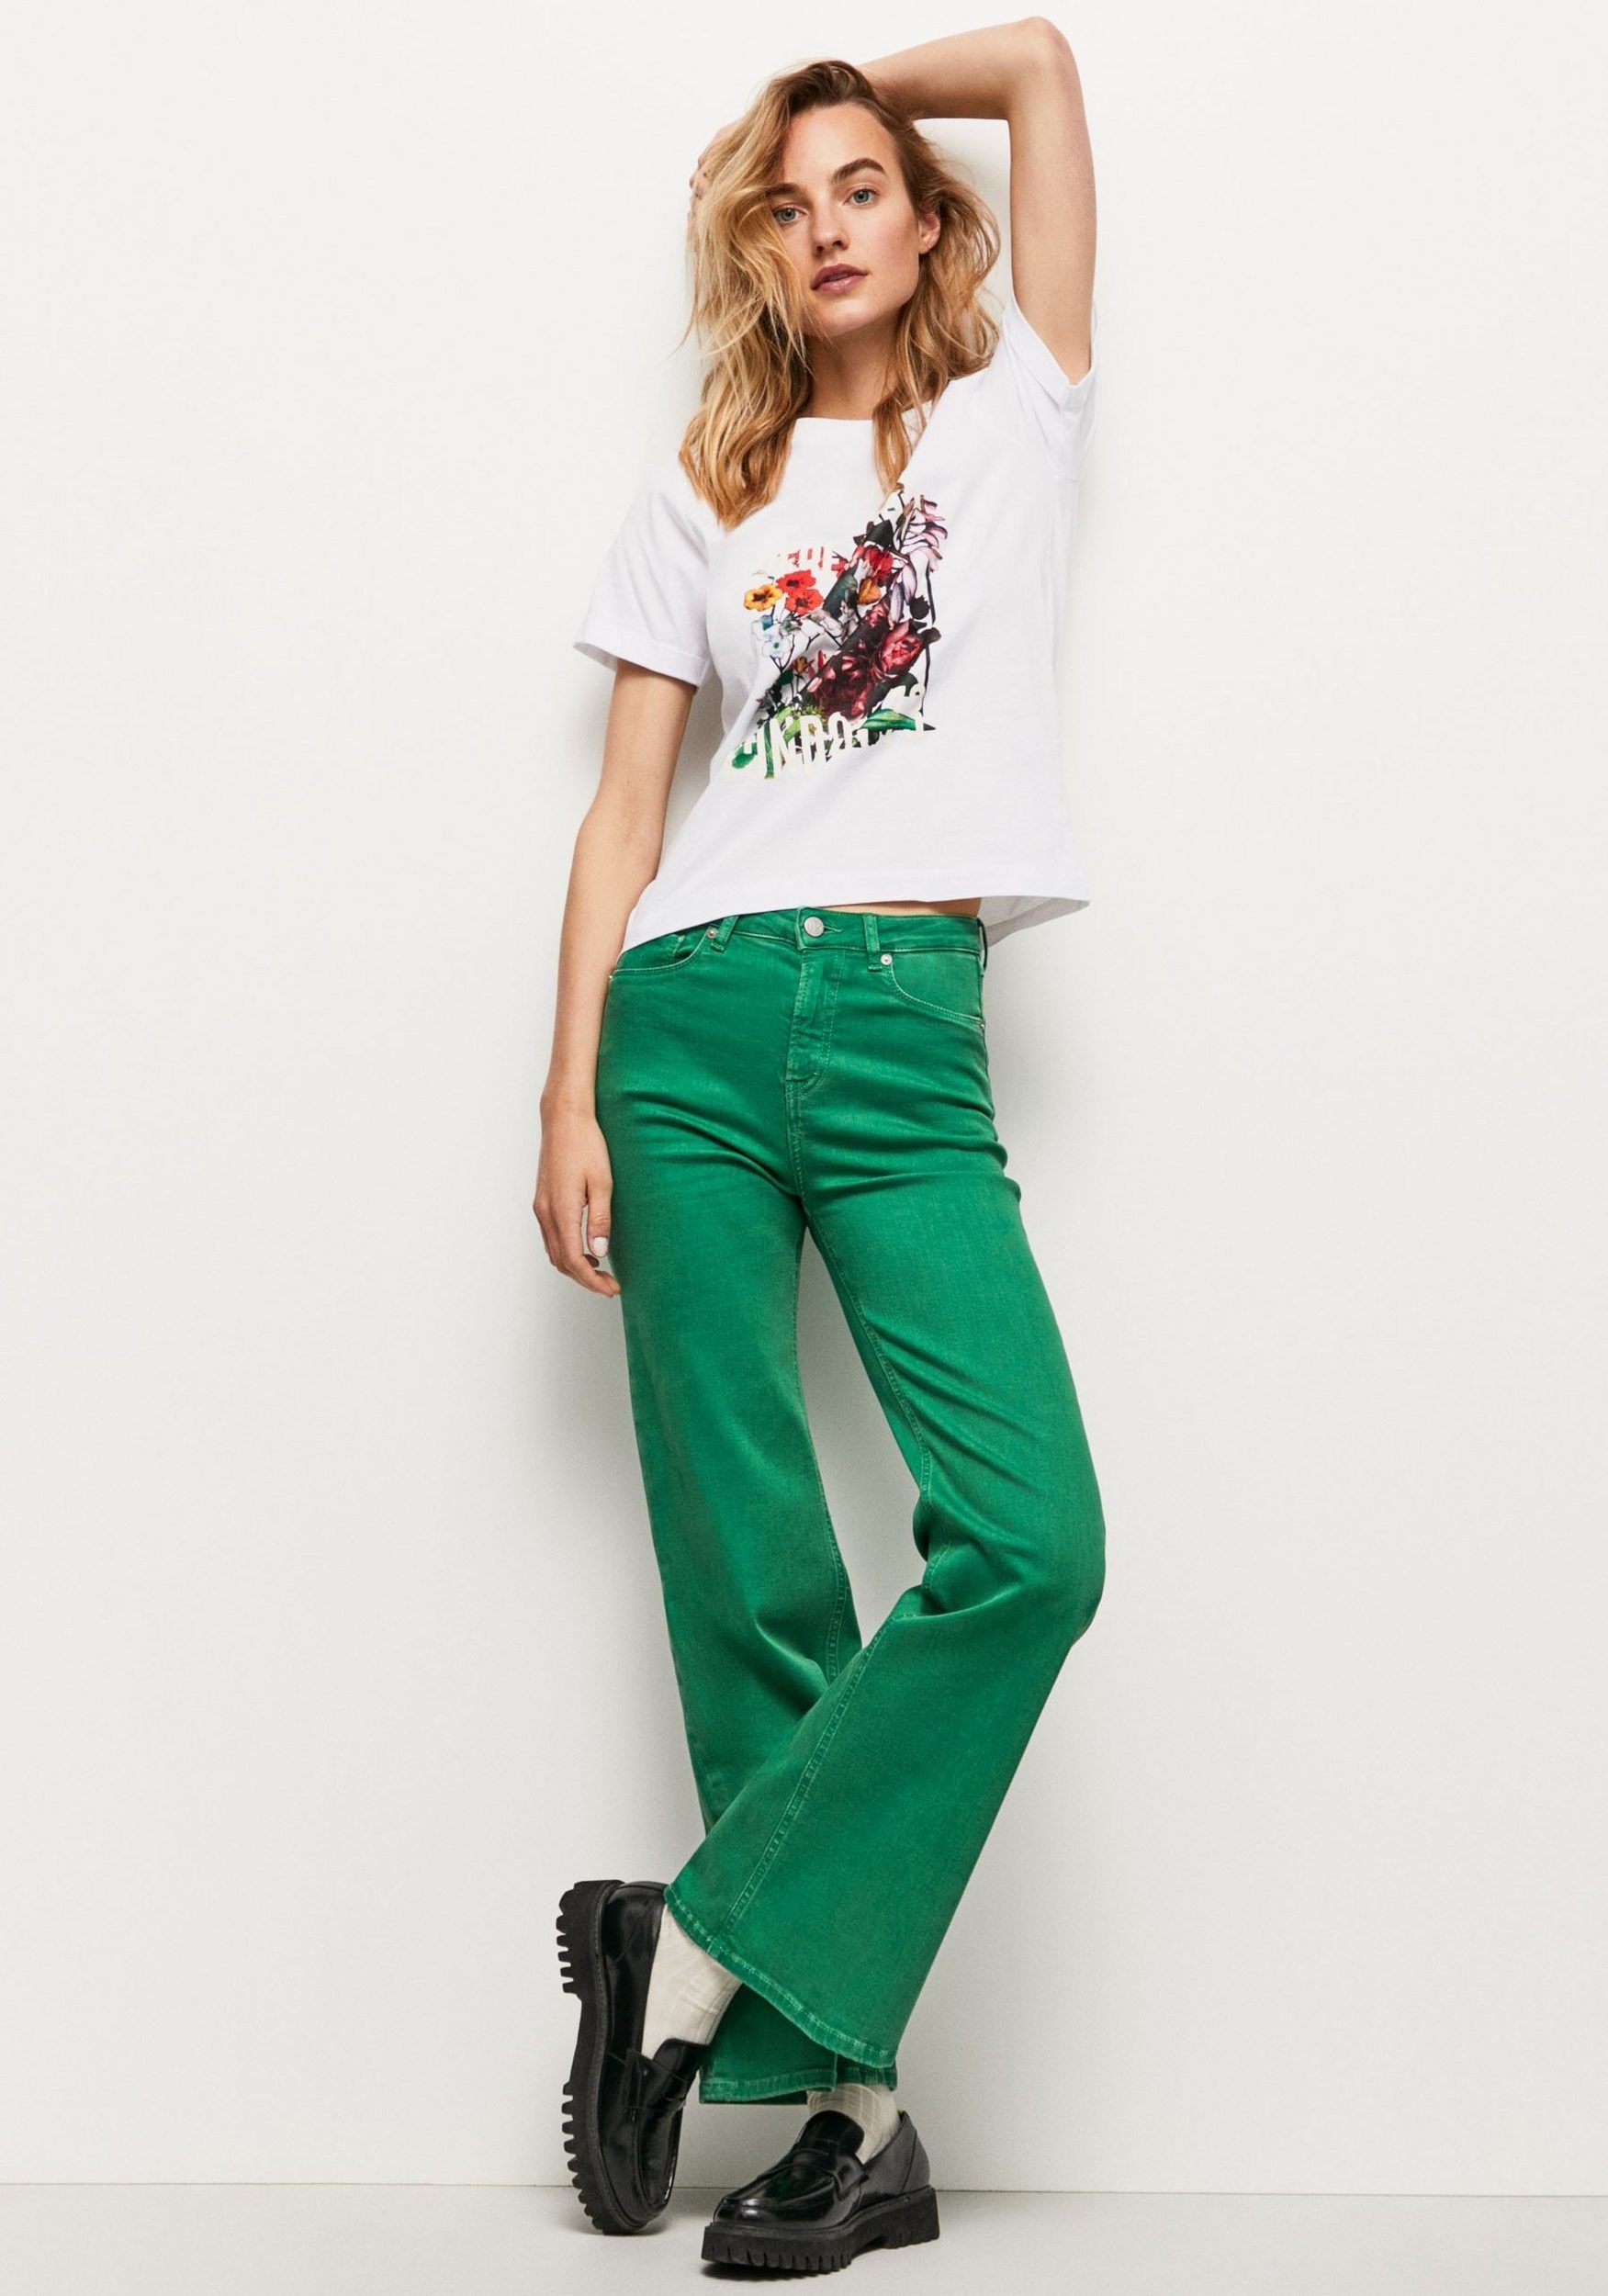 und T-Shirt 800WHITE oversized markentypischem Passform Pepe tollem Frontprint in mit Jeans